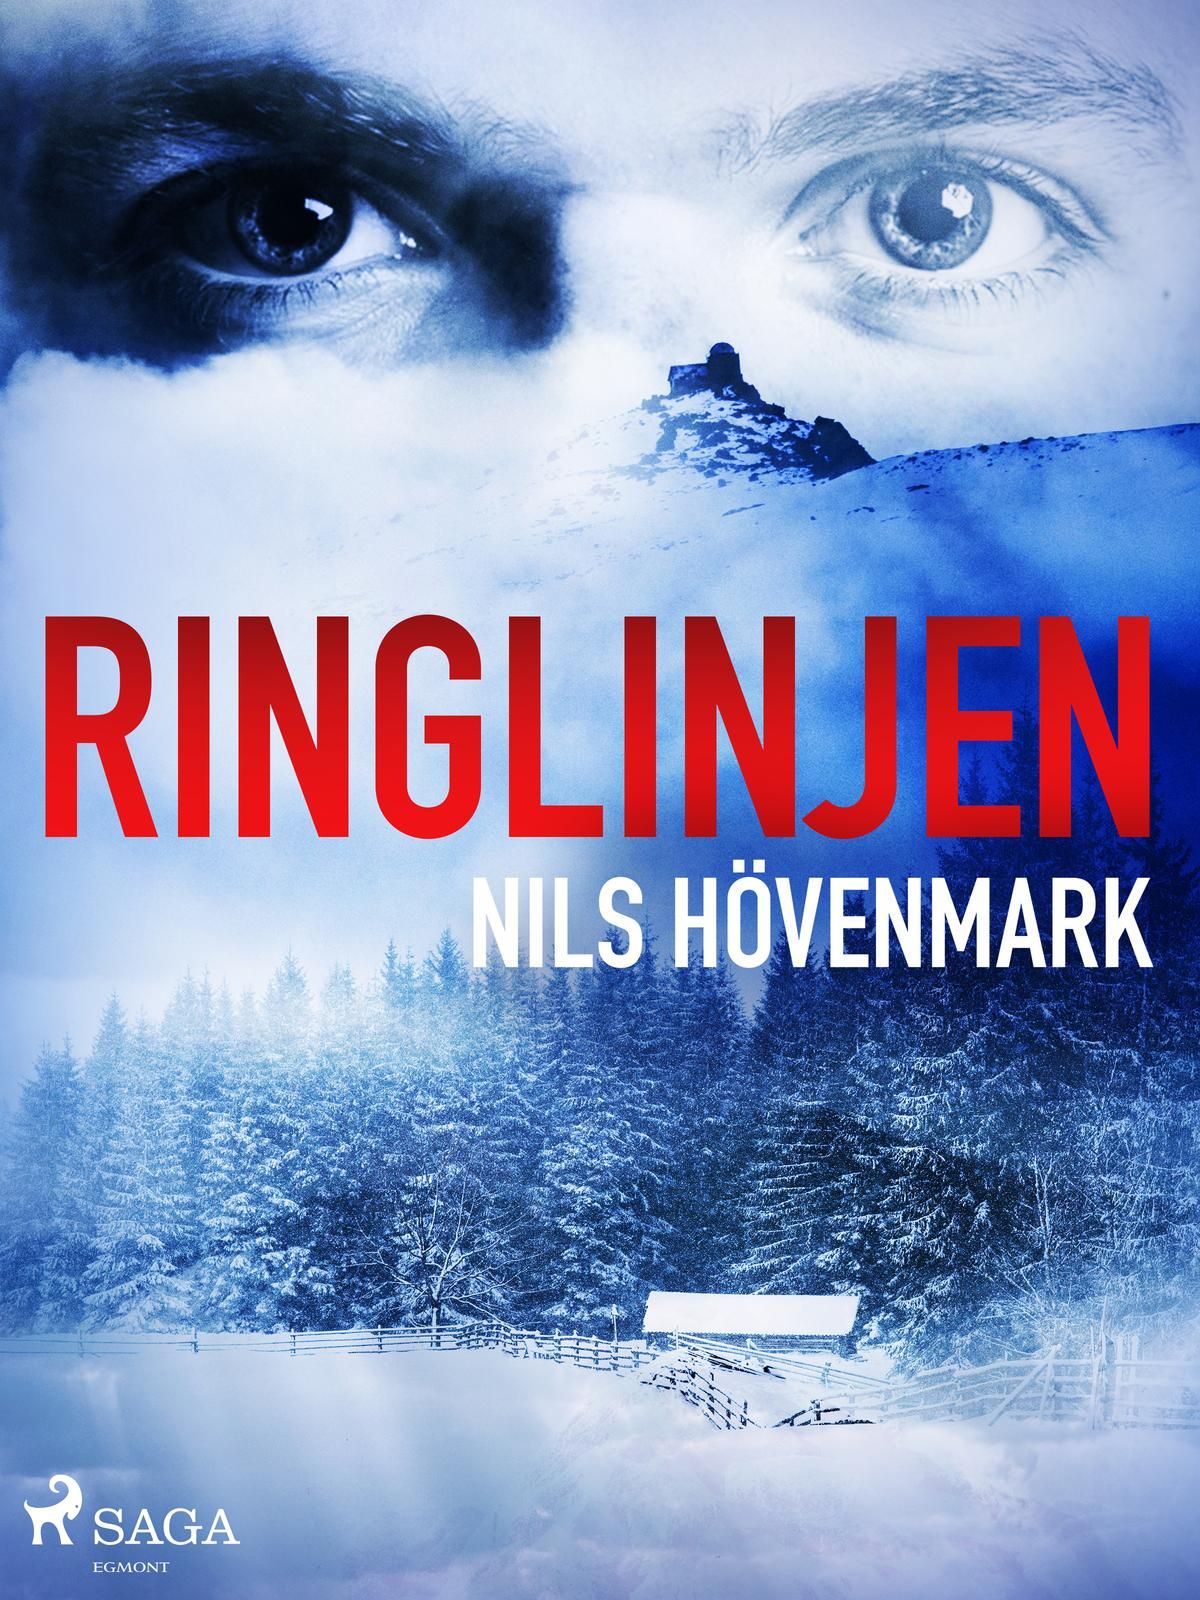 Ringlinjen, eBook by Nils Hövenmark